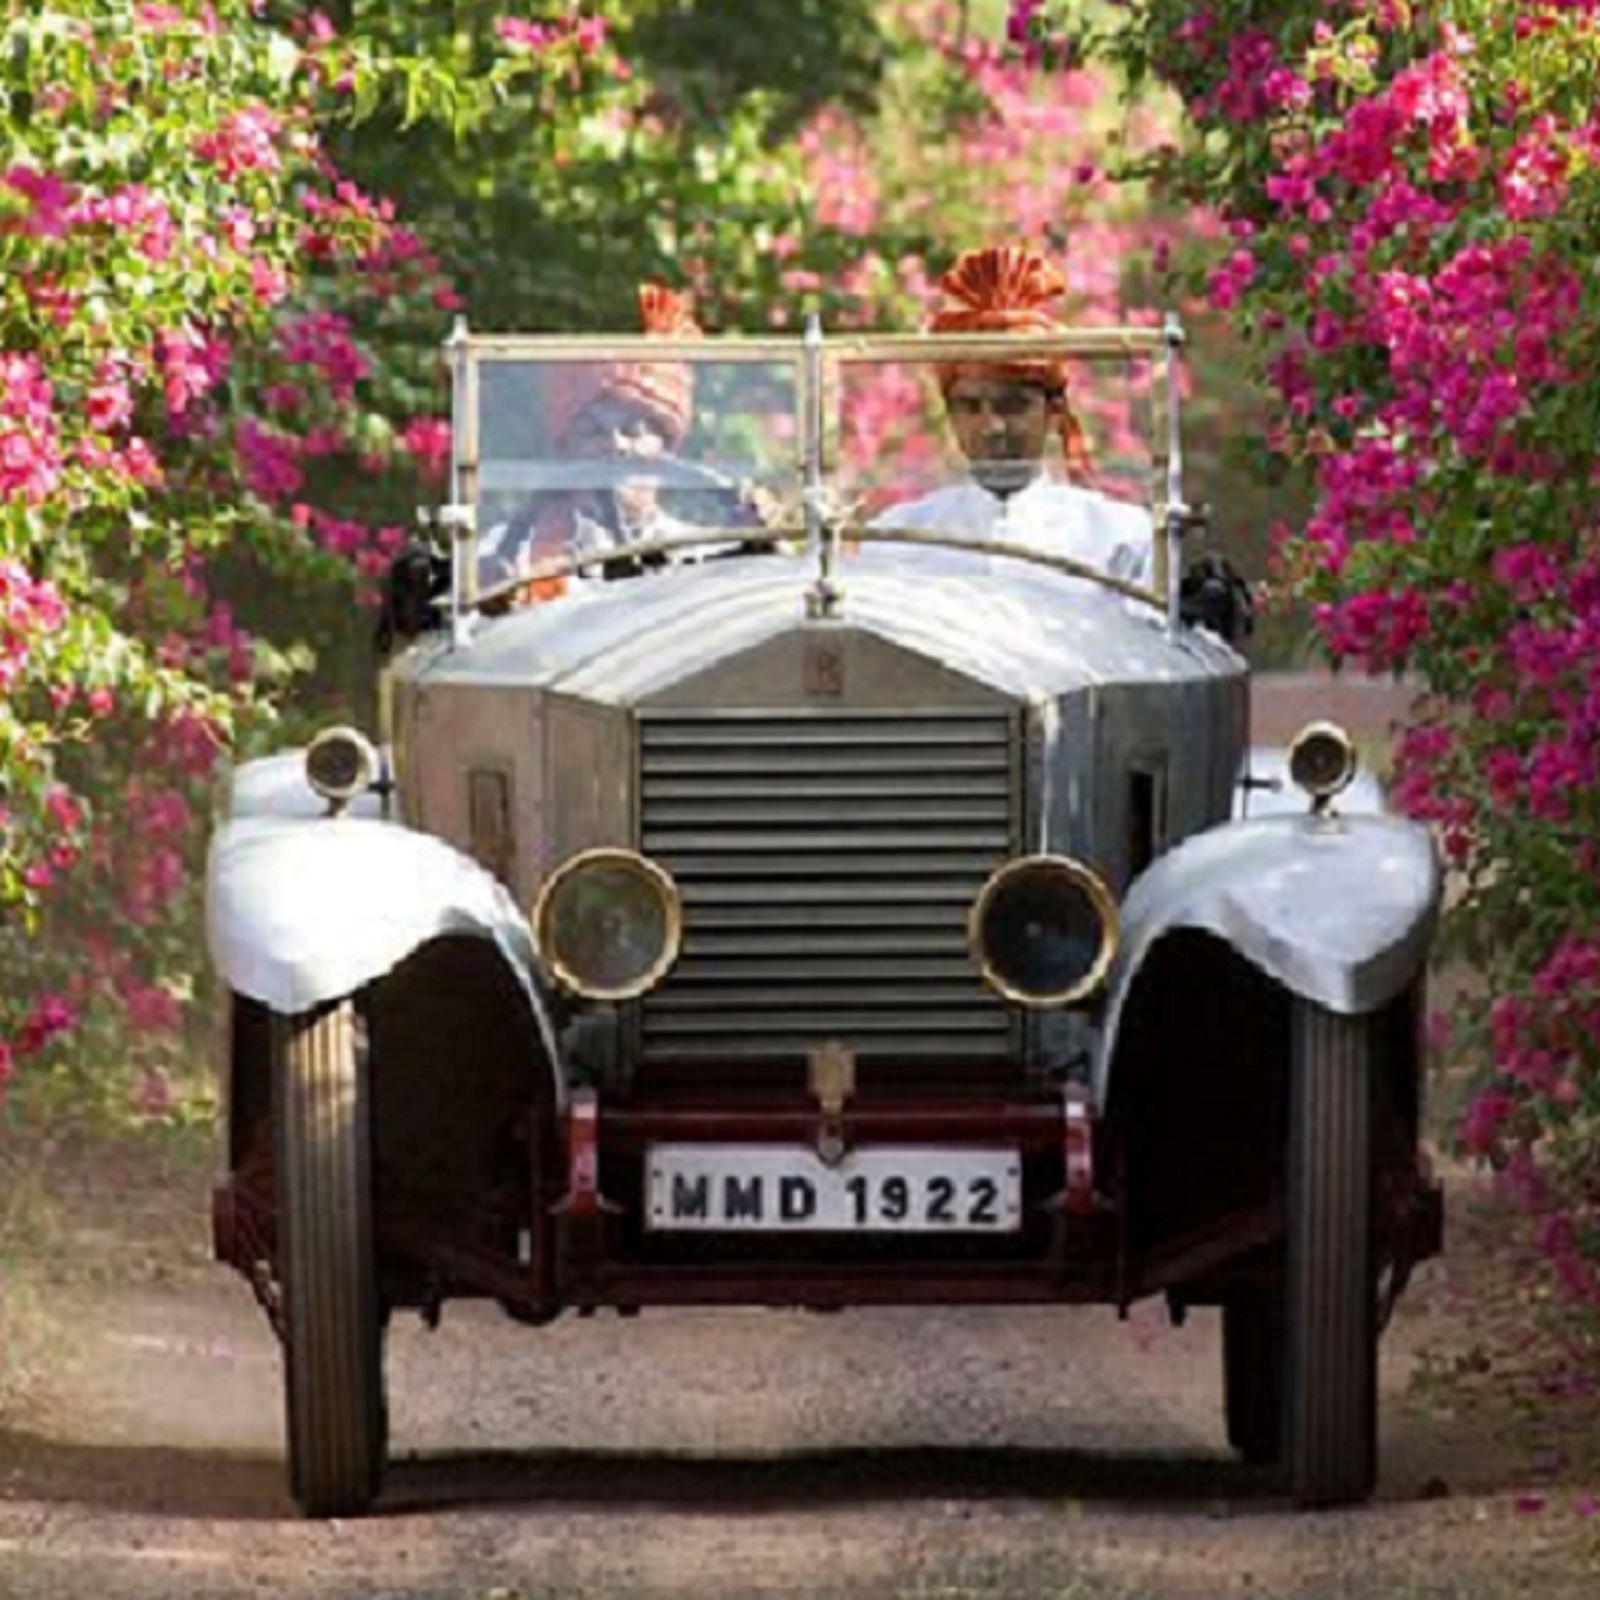 ਕੀ ਸੱਚਮੁੱਚ ਮਹਾਰਾਜਾ ਜੈ ਸਿੰਘ ਨੇ 'Rolls Royce' ਨੂੰ ਕੂੜਾ ਗੱਡੀ ਵਿੱਚ ਬਦਲ ਦਿੱਤਾ ਸੀ